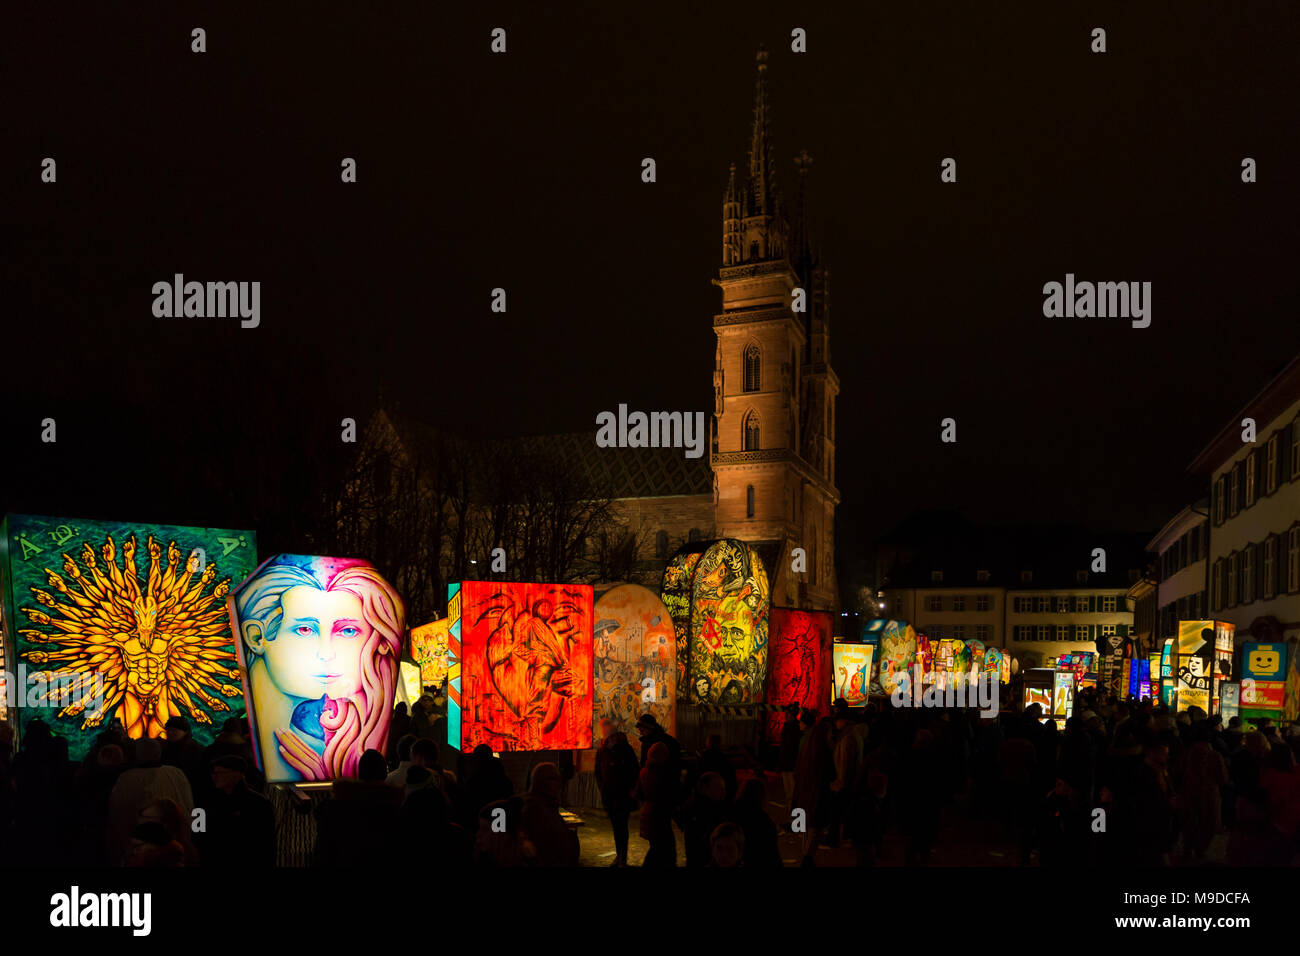 Muensterplatz, Bâle, Suisse - 20 février 2018. Carnaval de Bâle. Belles lanternes illuminées en face de la cathédrale de Bâle Banque D'Images